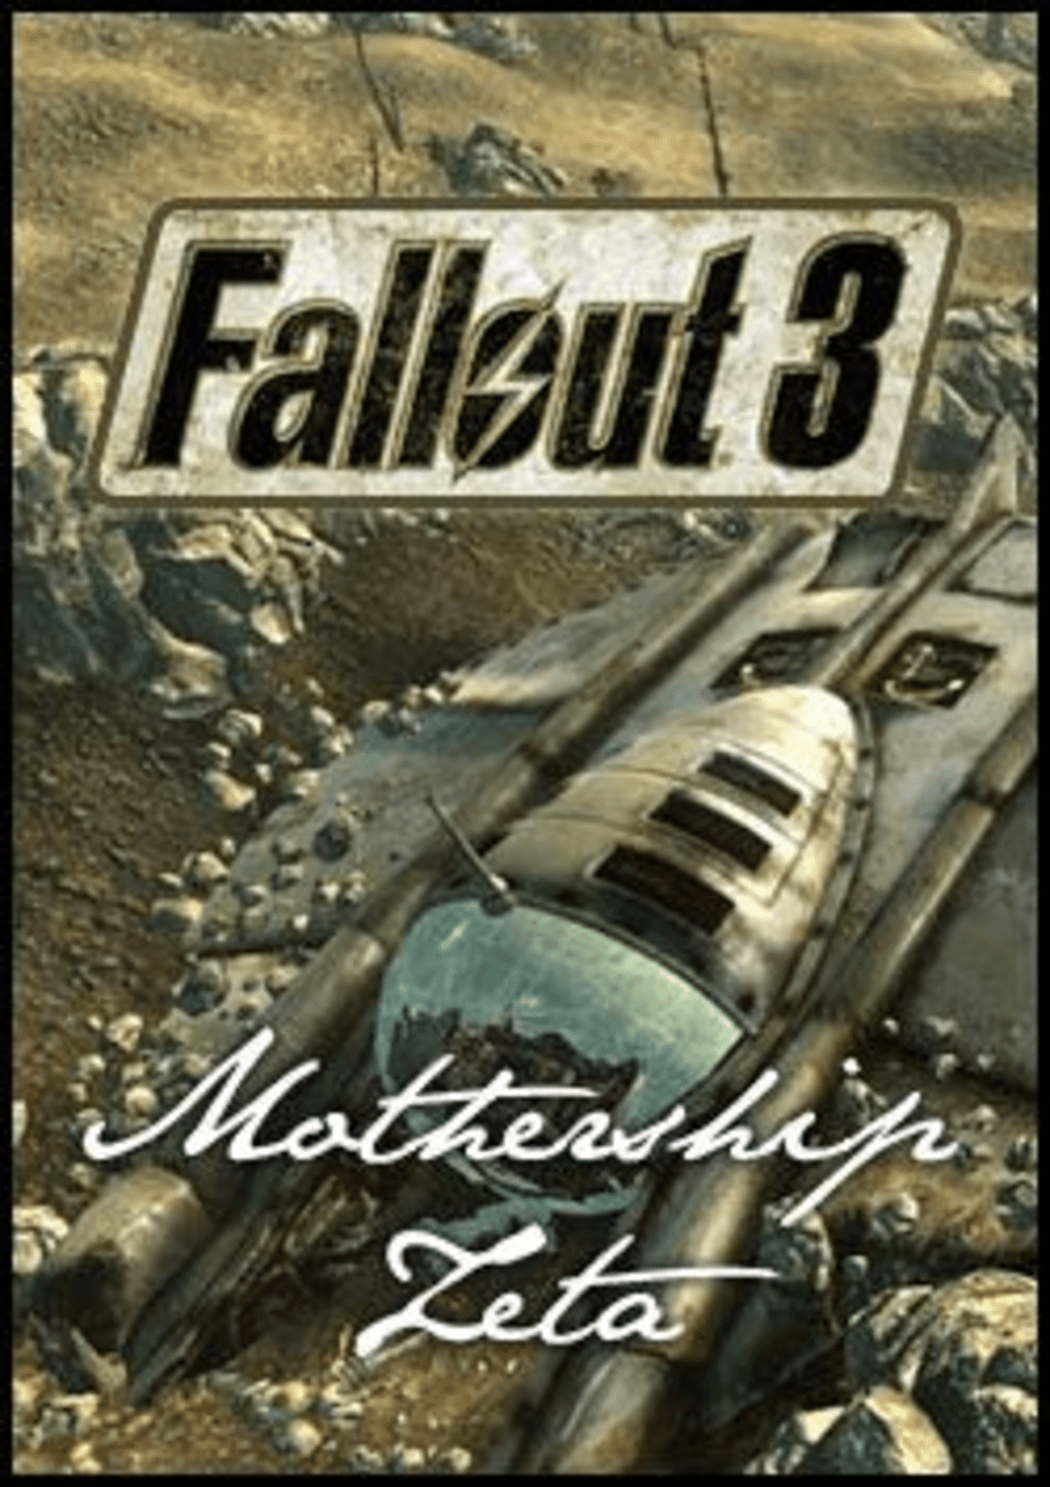 Buy Fallout 3 - Mothership Zeta PC Steam key! Cheap price